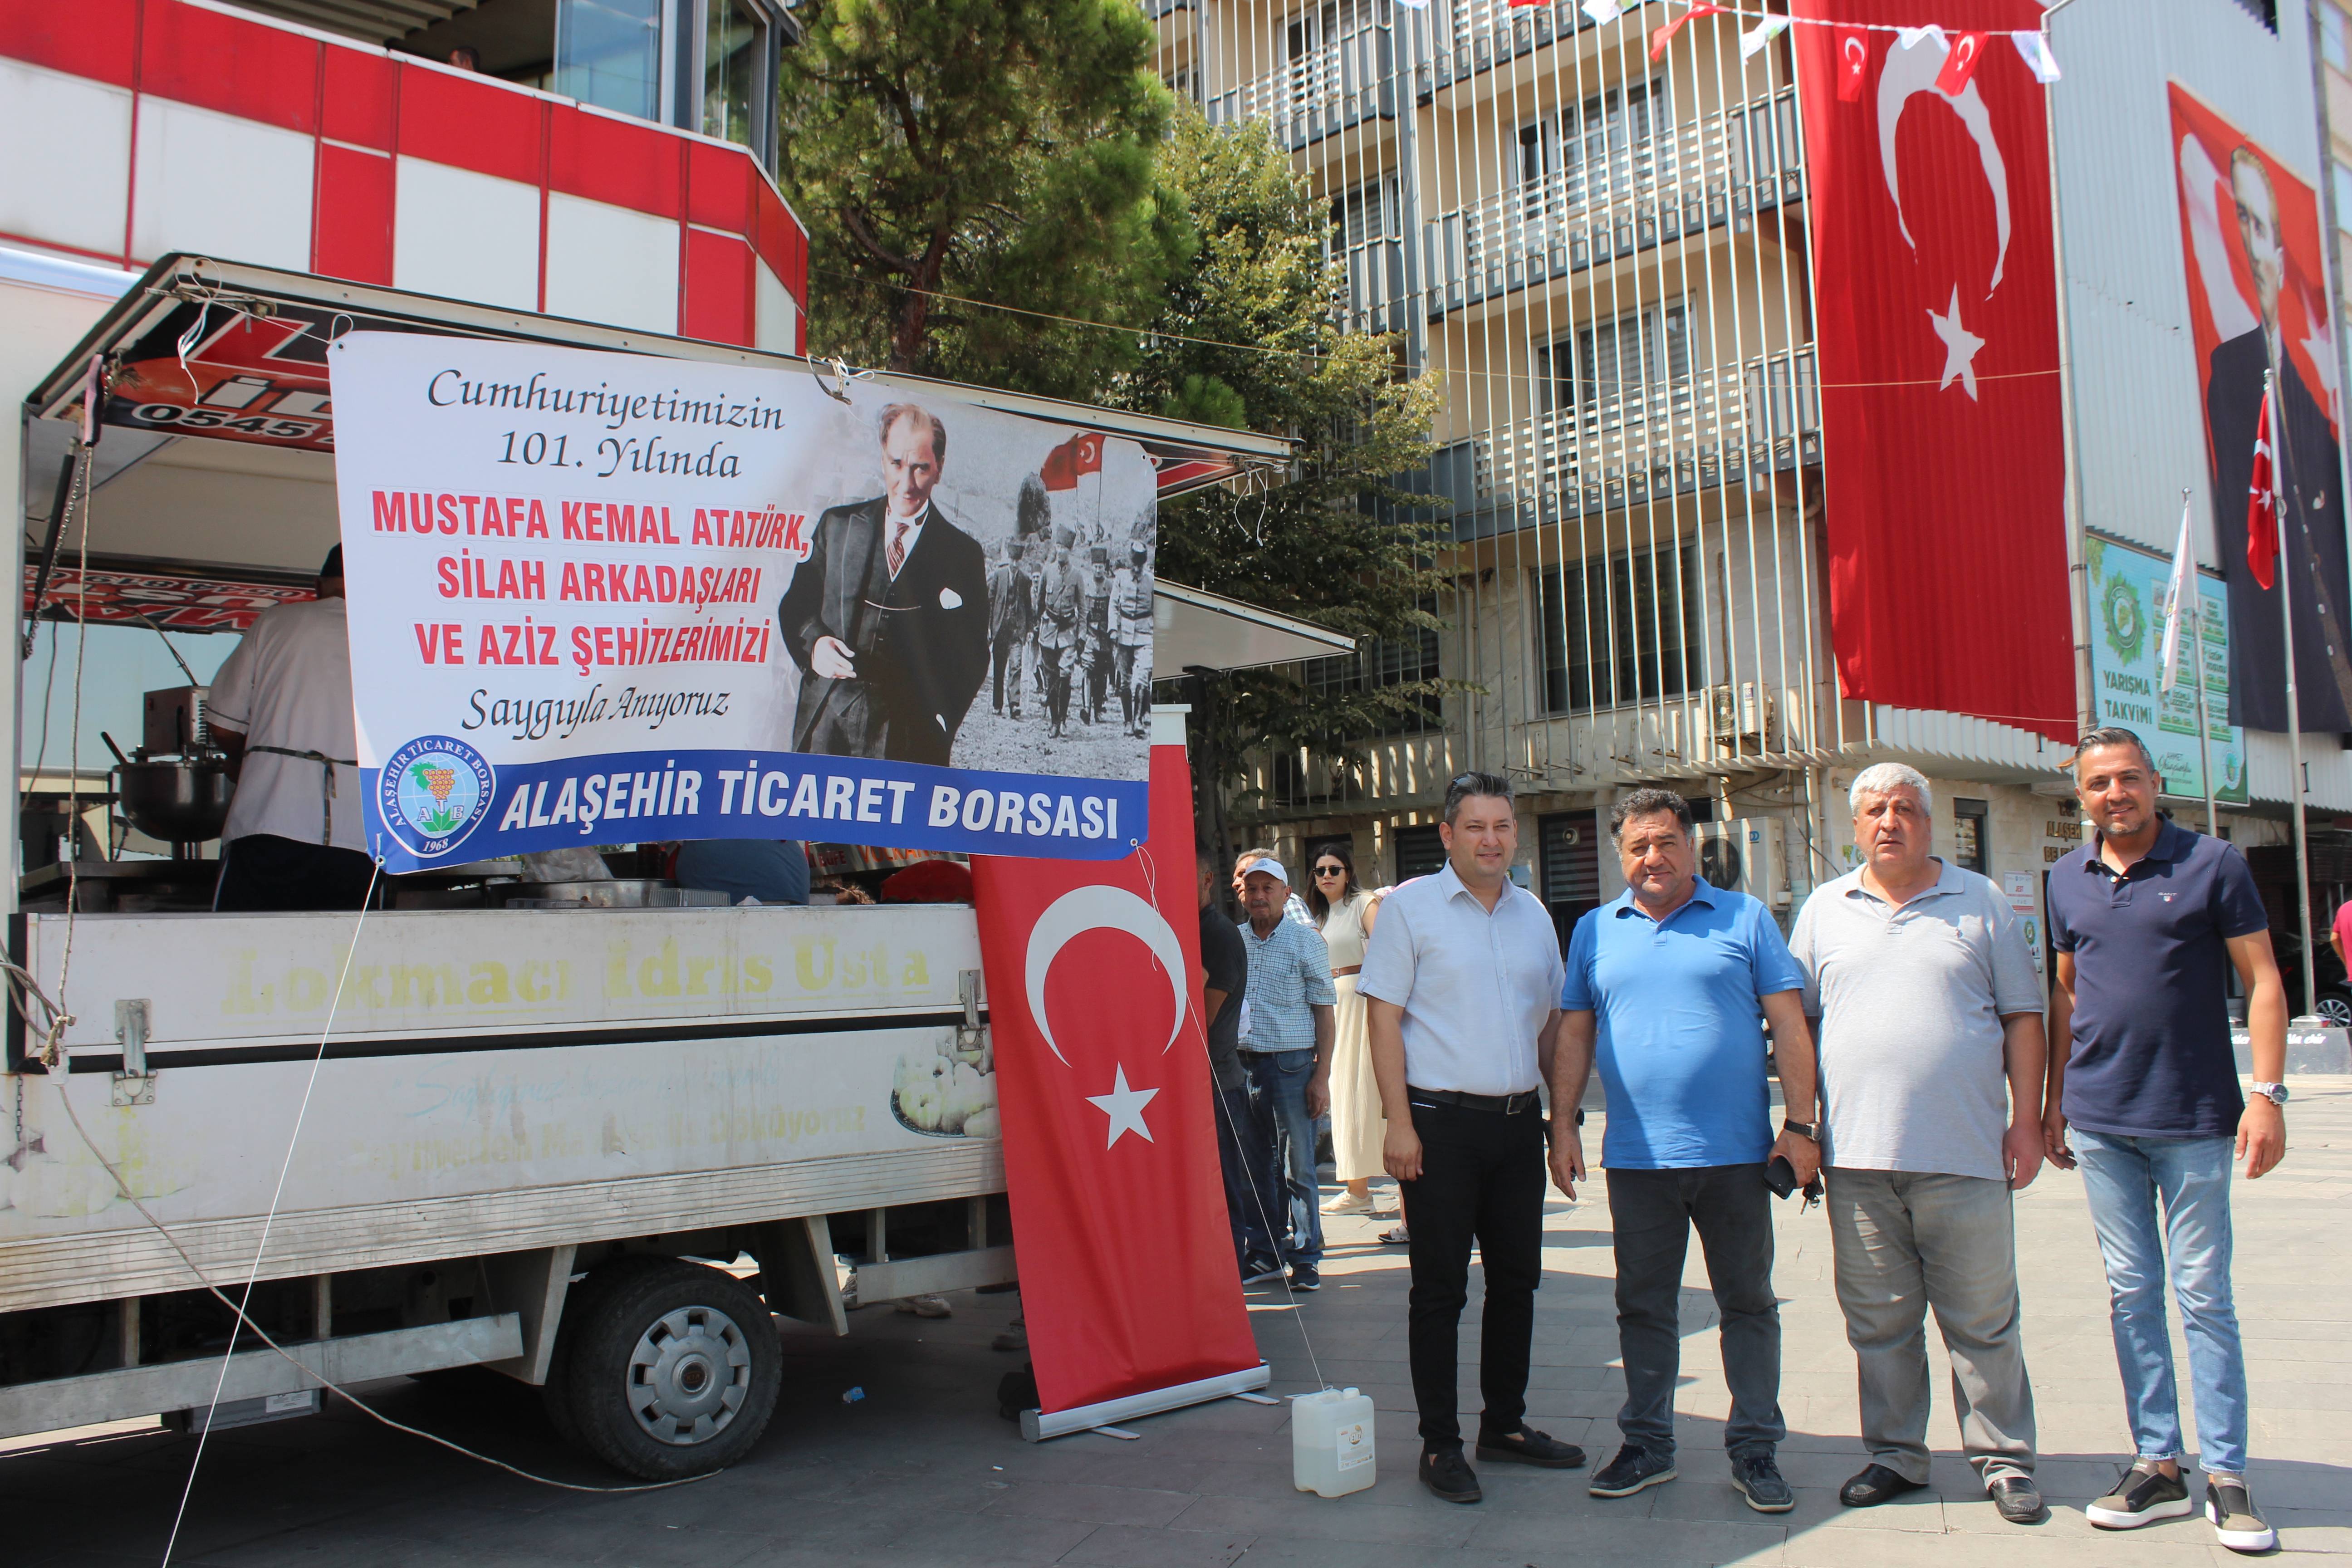 Alaşehir Ticaret Borsası olarak Cumhuriyetimizin kuruluş yıl dönümü, Mustafa Kemal  ATATÜRK ve  Silah Arkadaşları adına lokma döktürttük.